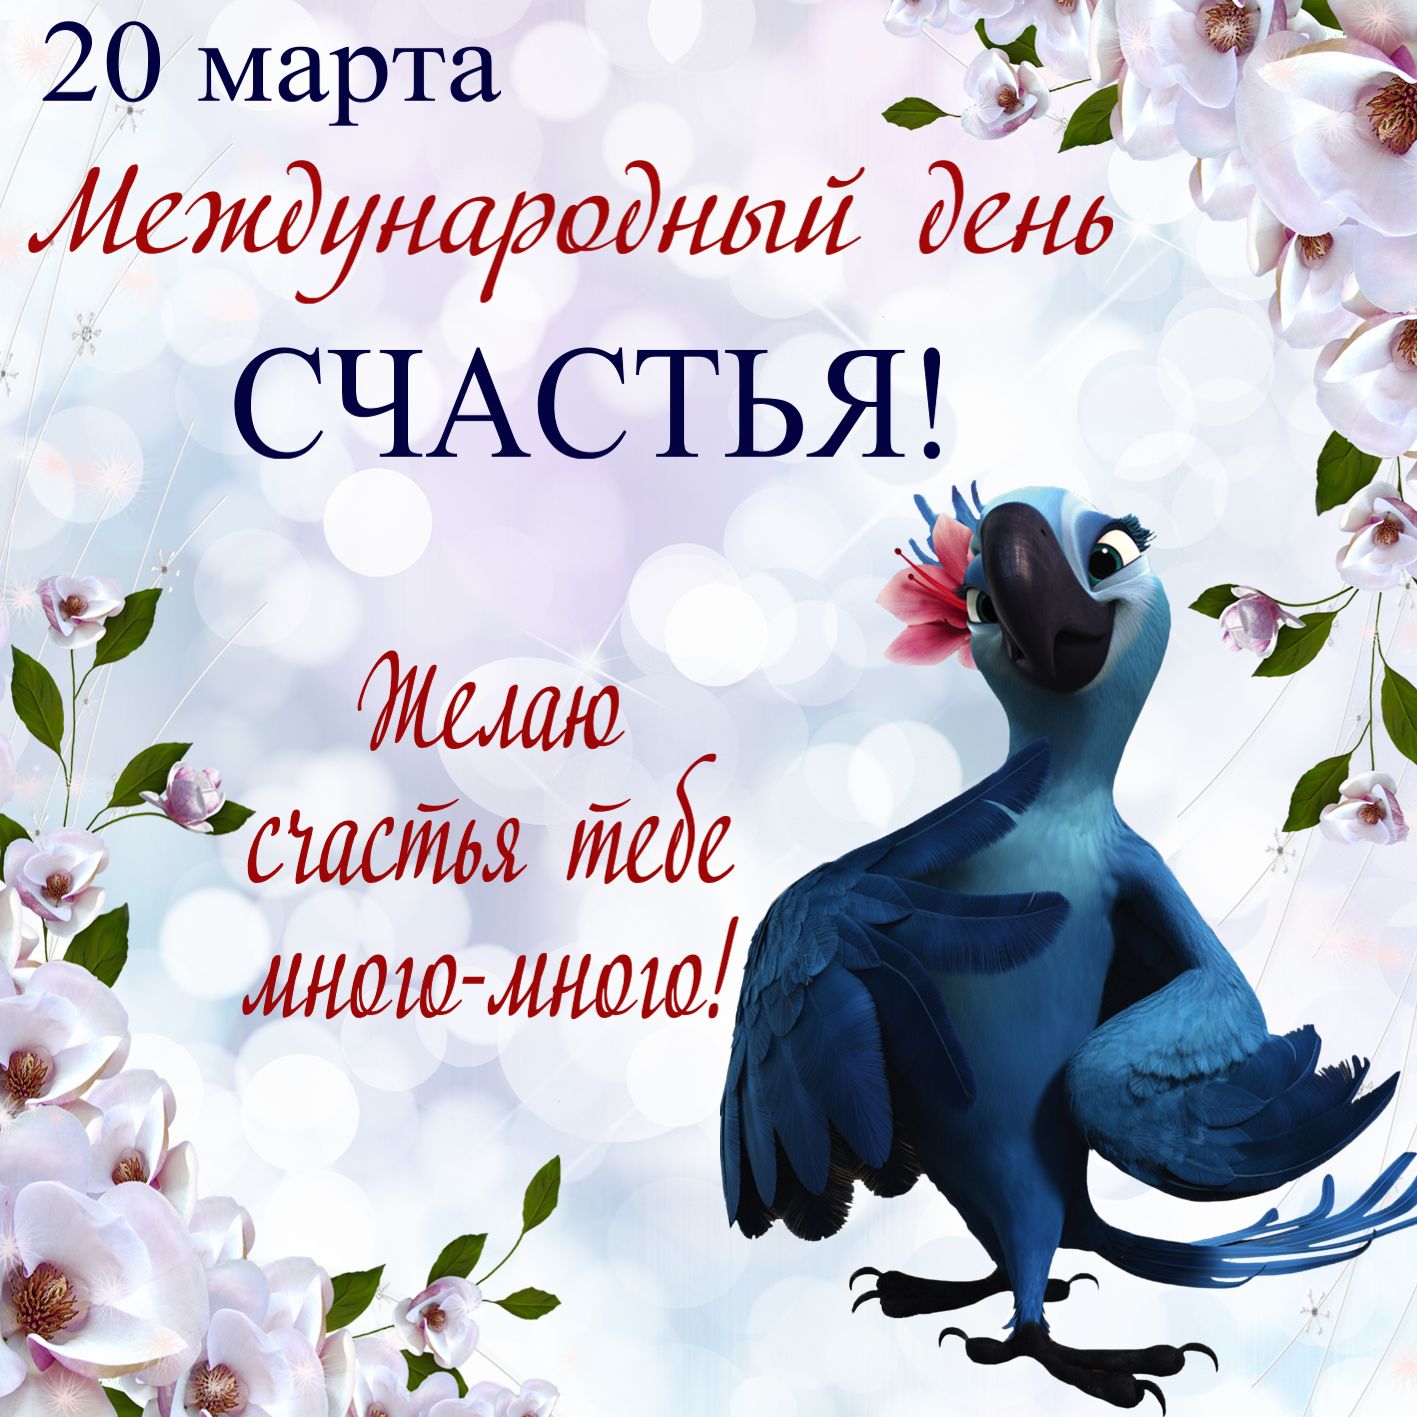 Международный день счастья , открытка с птичкой ко дню счастья. Открытка , картинка с международным днём счастья , на открытке красивая птичка попугай , попугайчик синяя с цветком розовым на голове , 20 марта день счастья . 